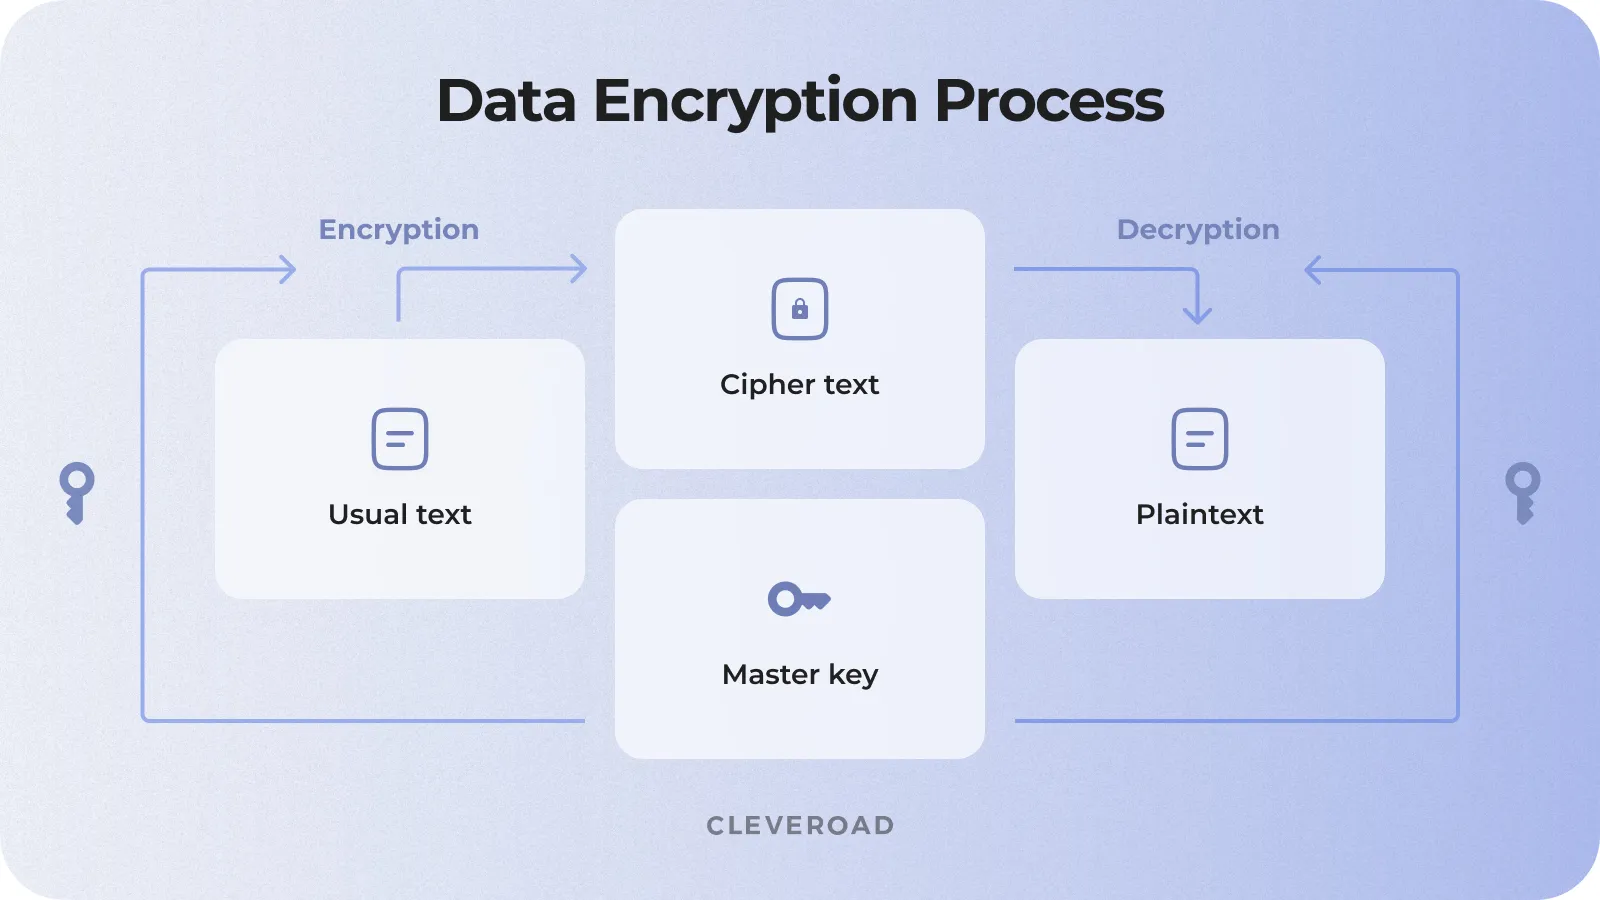 Data encryption flow